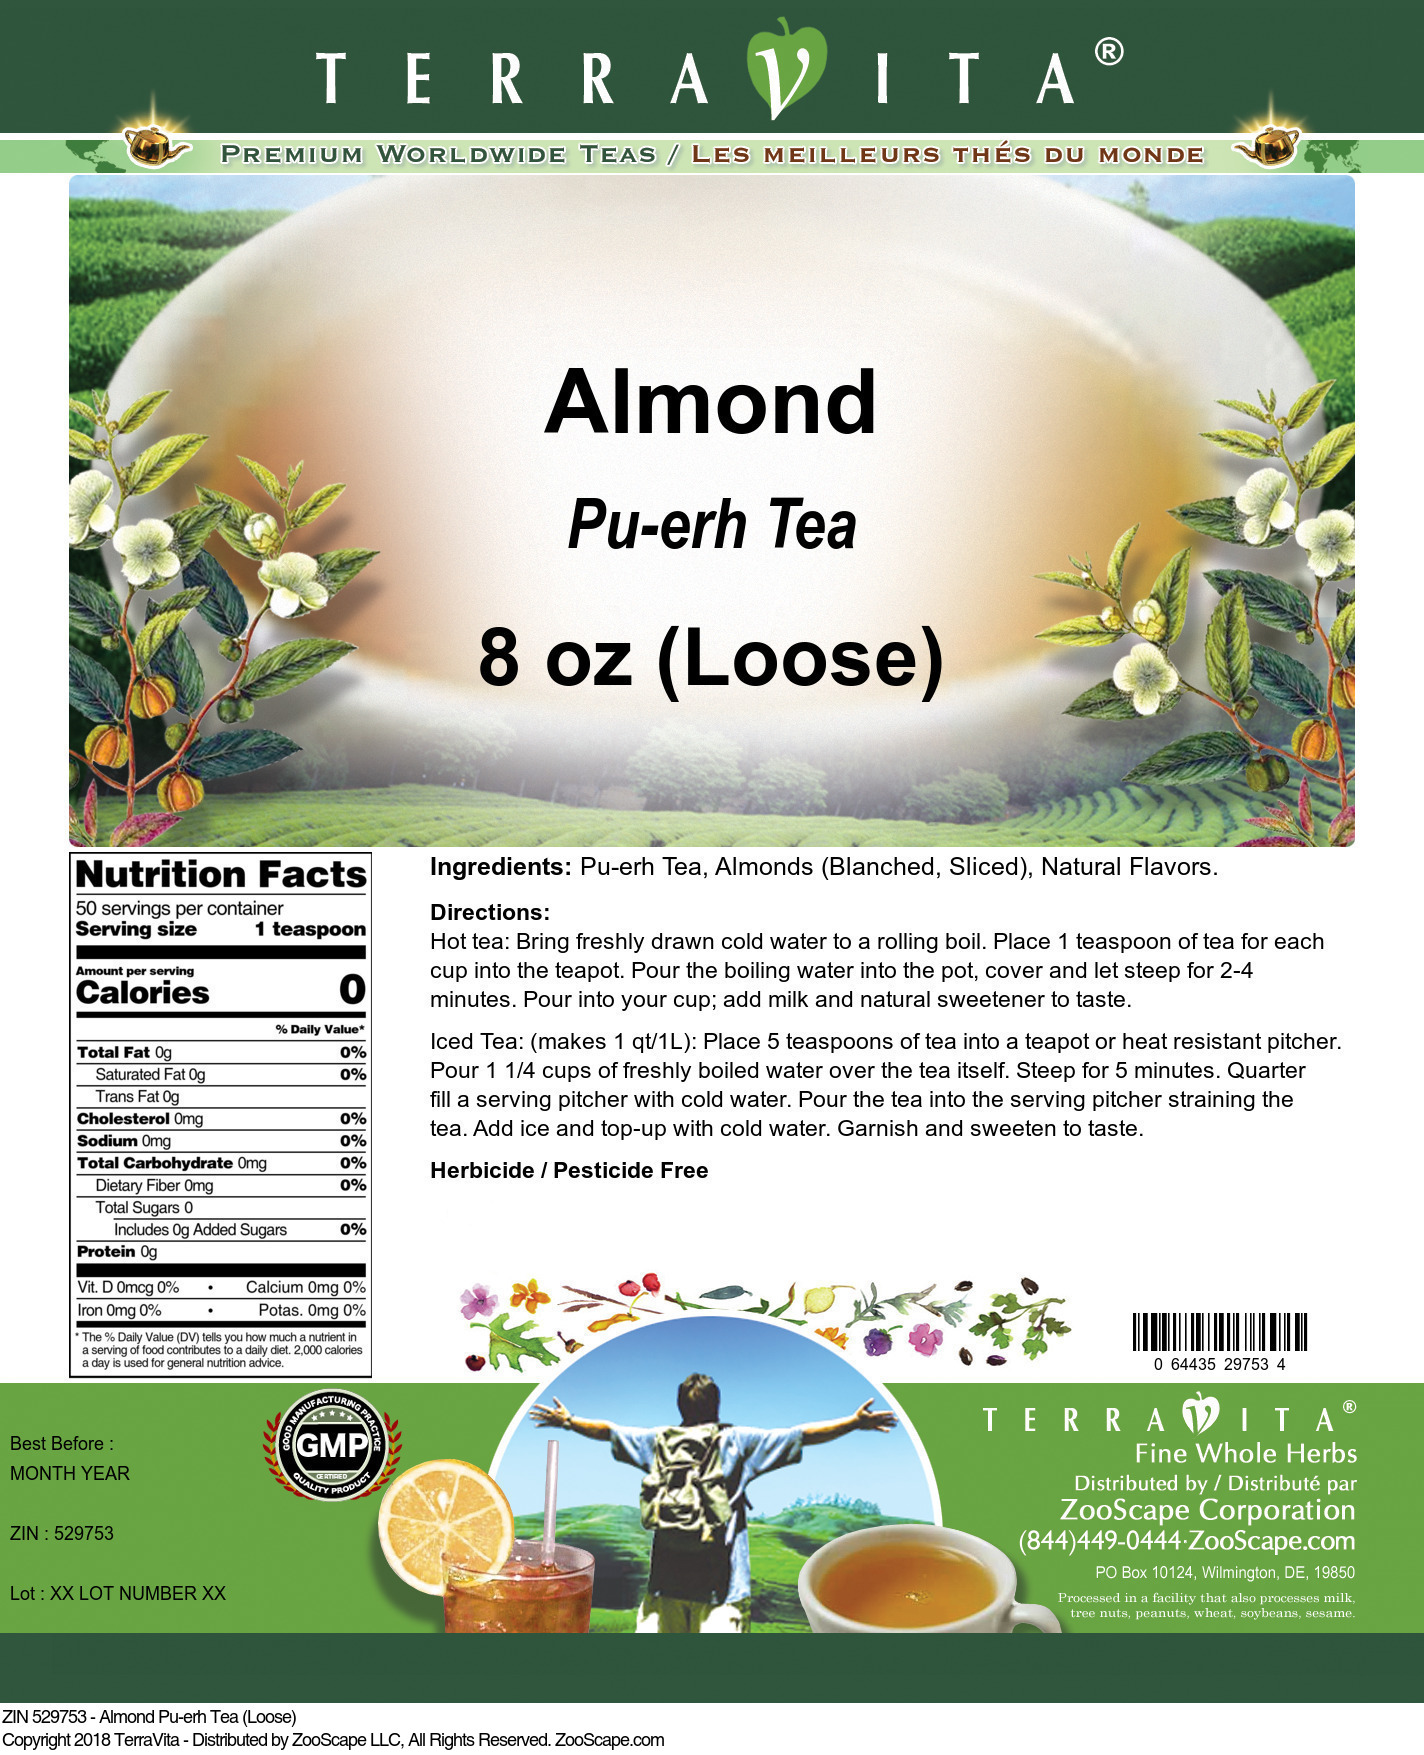 Almond Pu-erh Tea (Loose) - Label